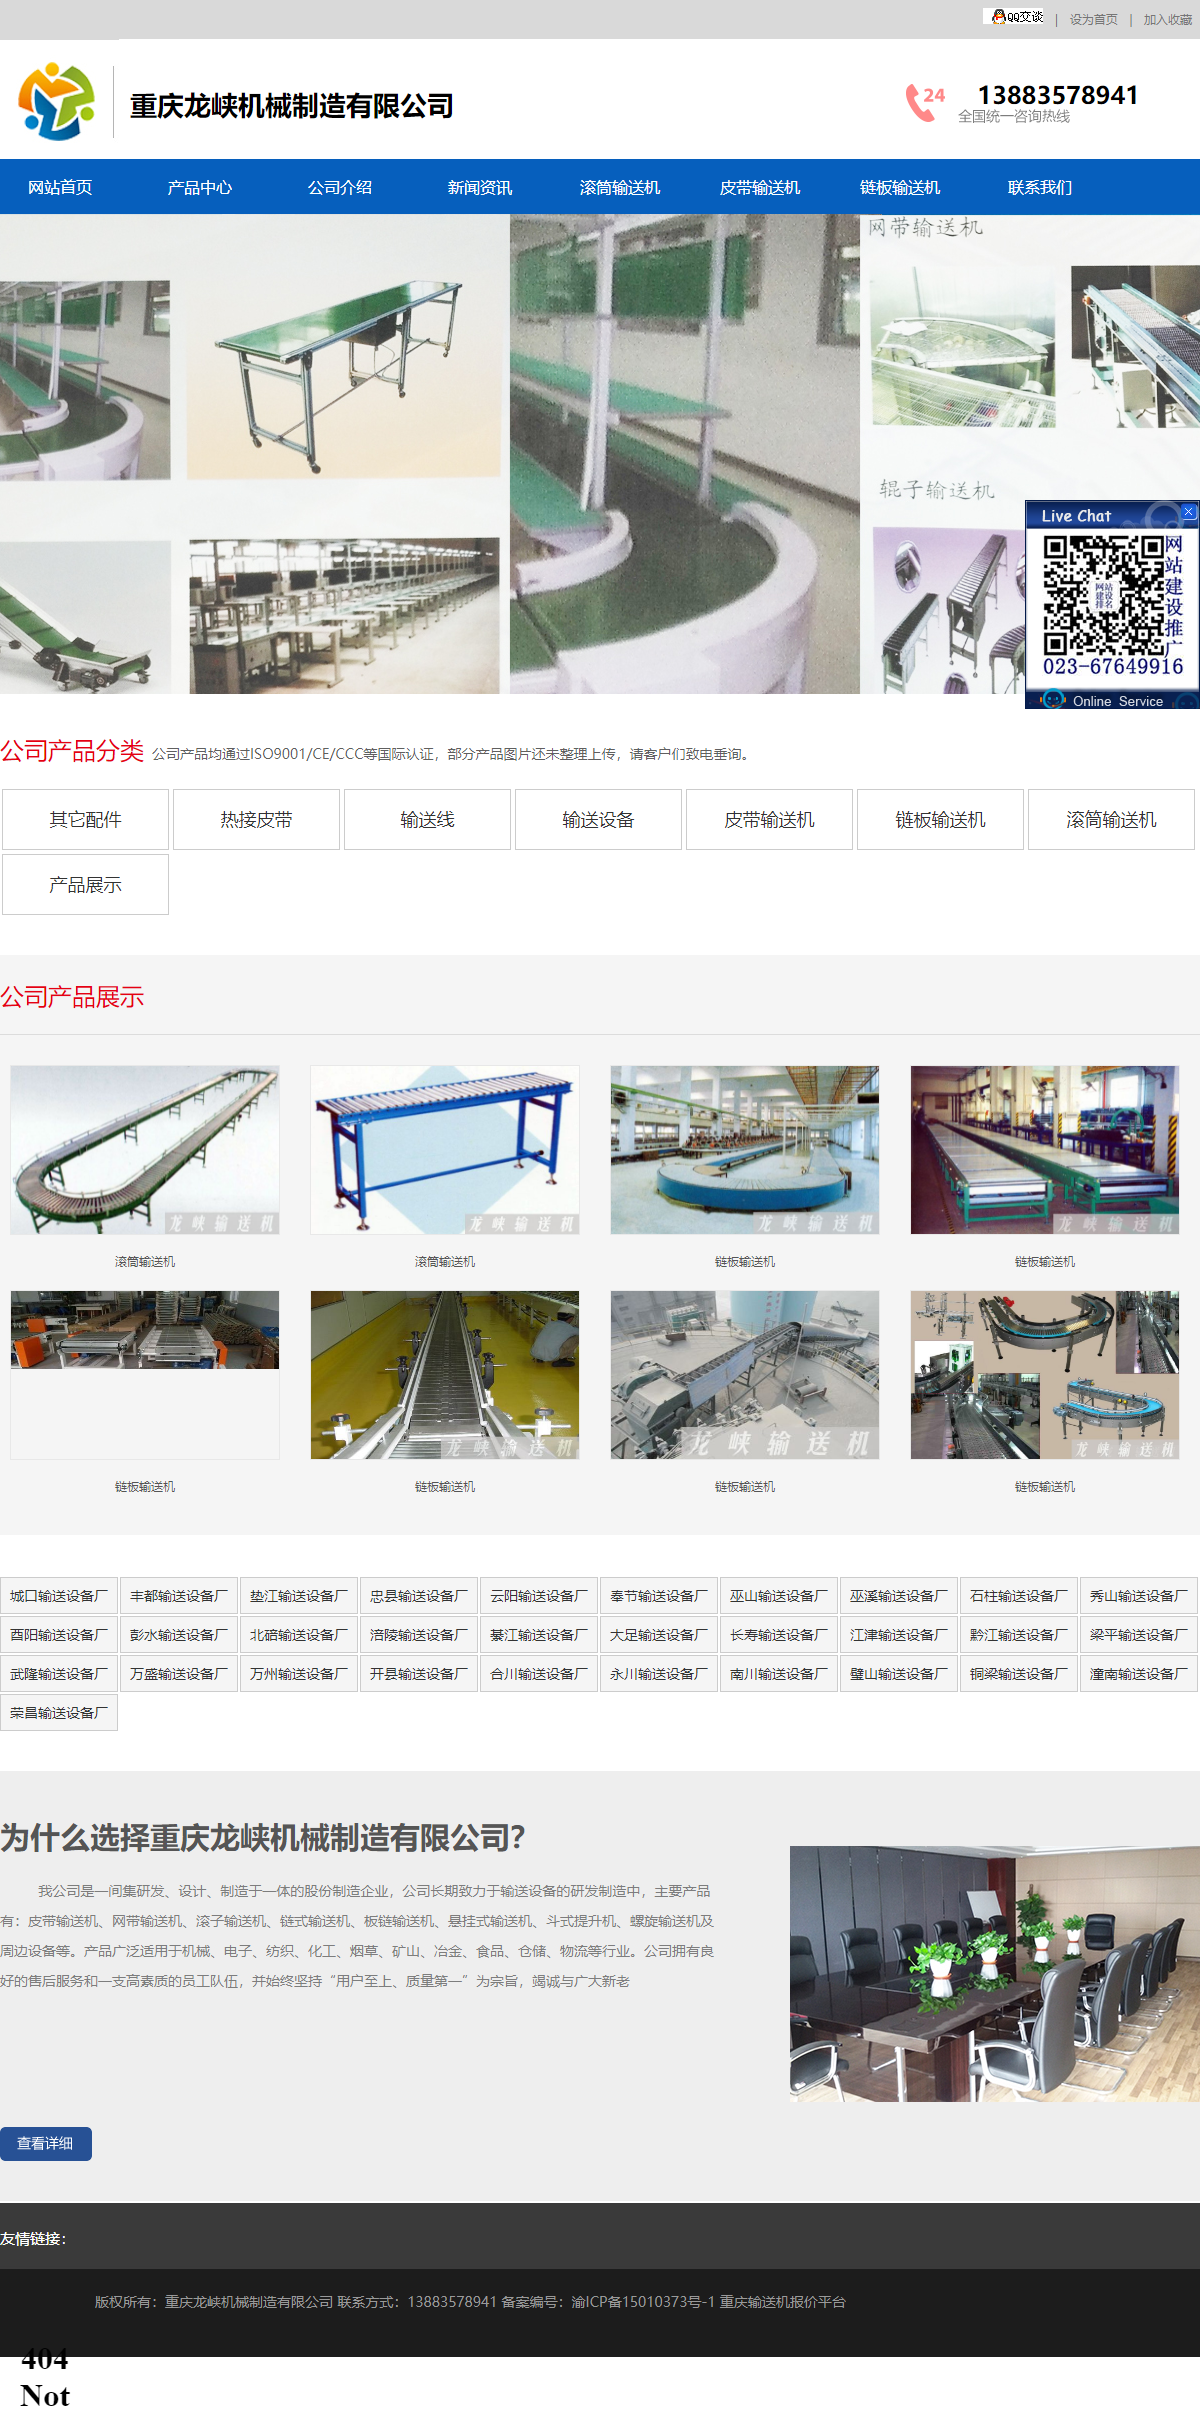 重庆龙峡机械制造有限公司网站案例